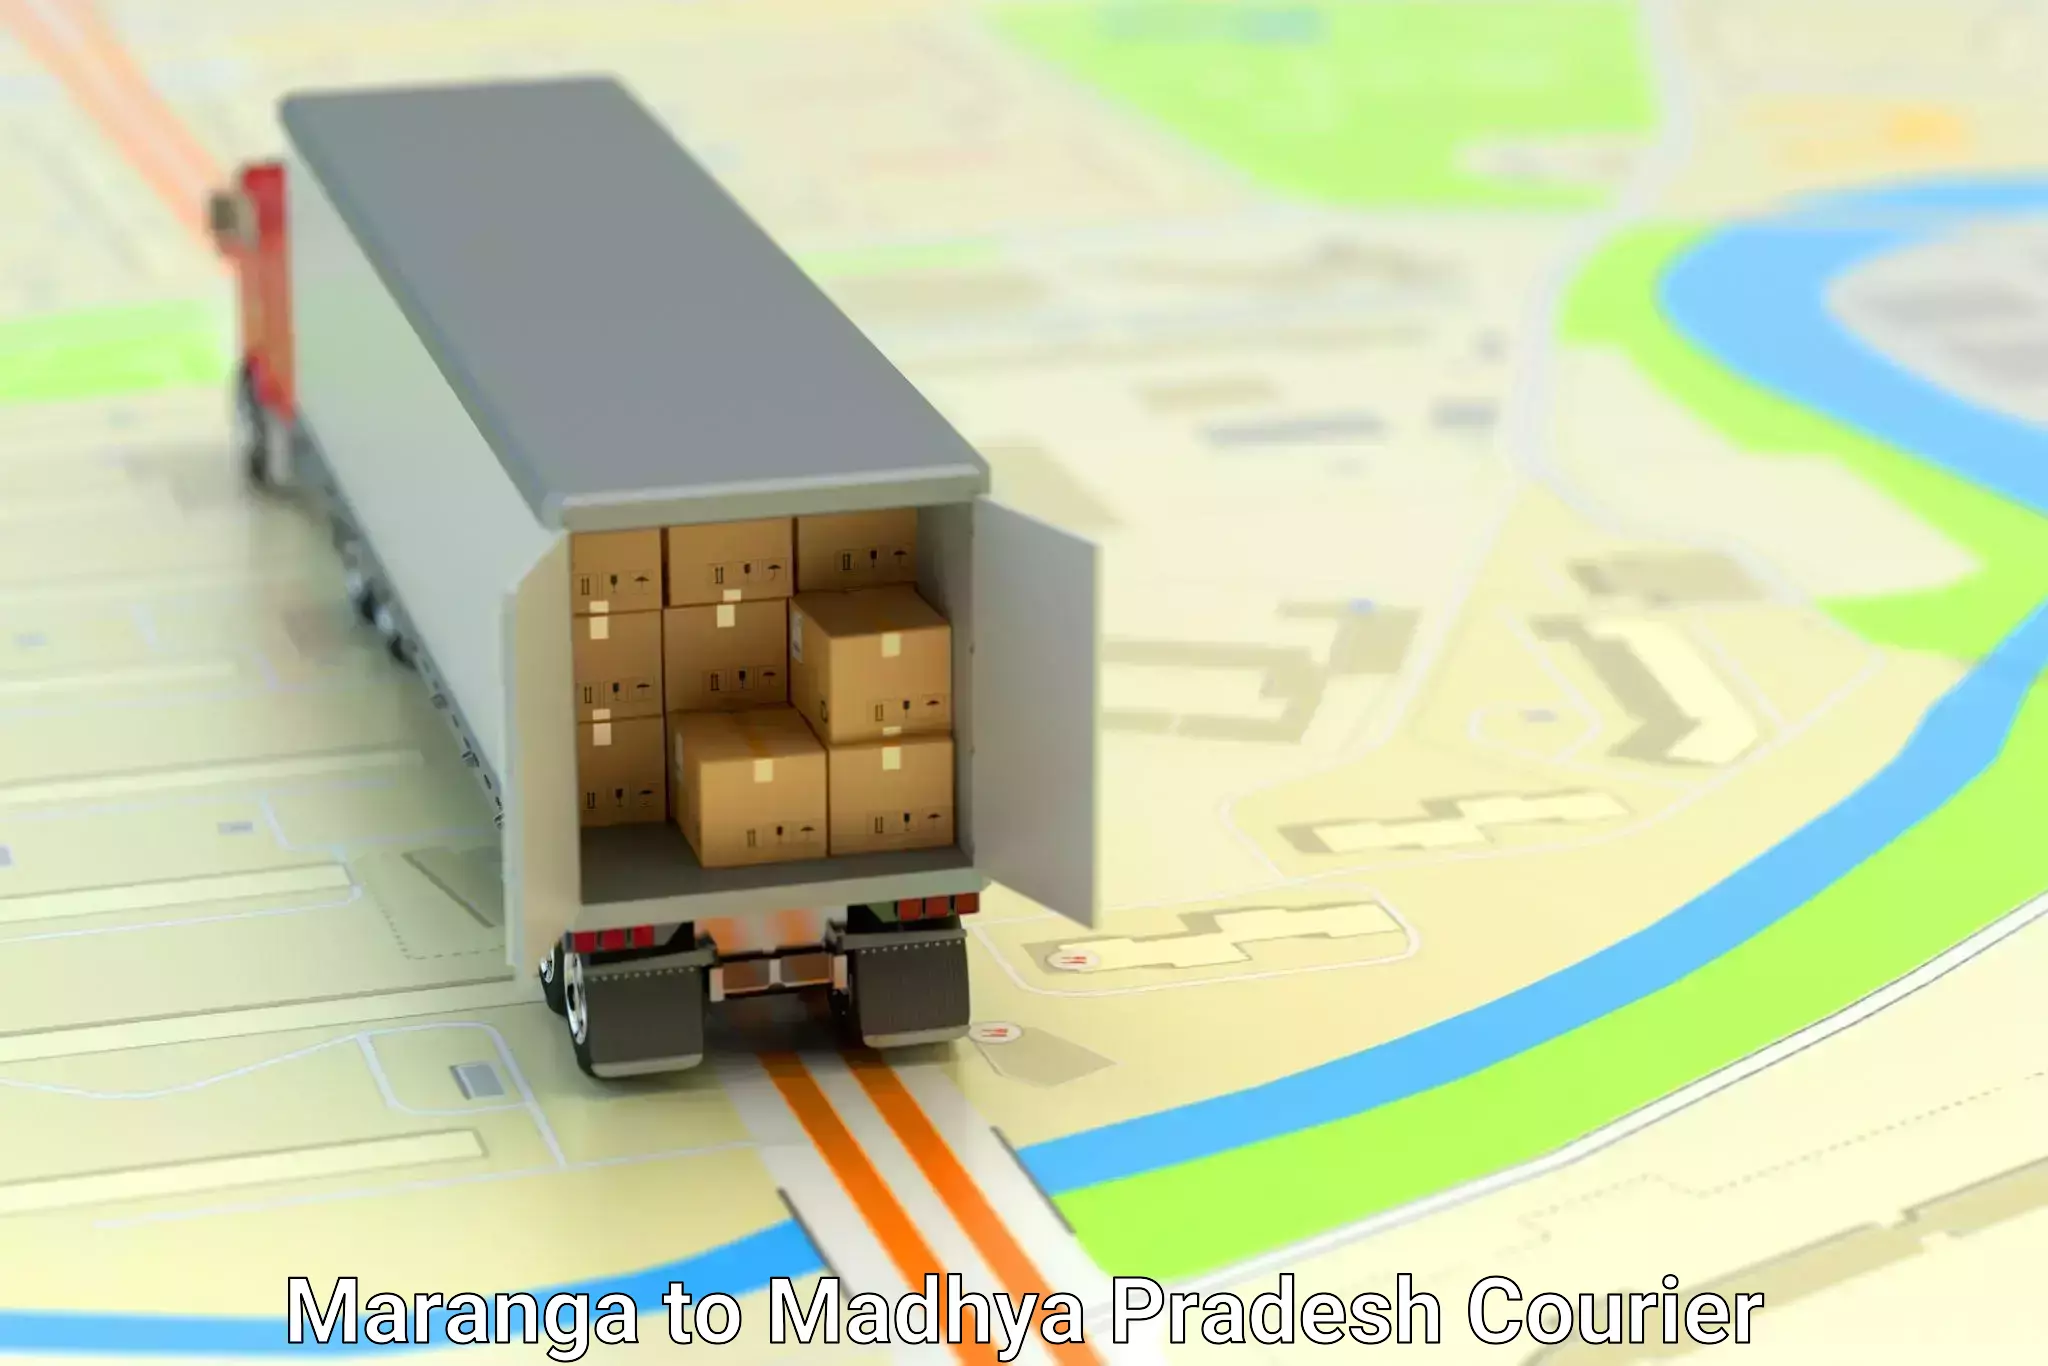 Furniture transport experts Maranga to Madhya Pradesh